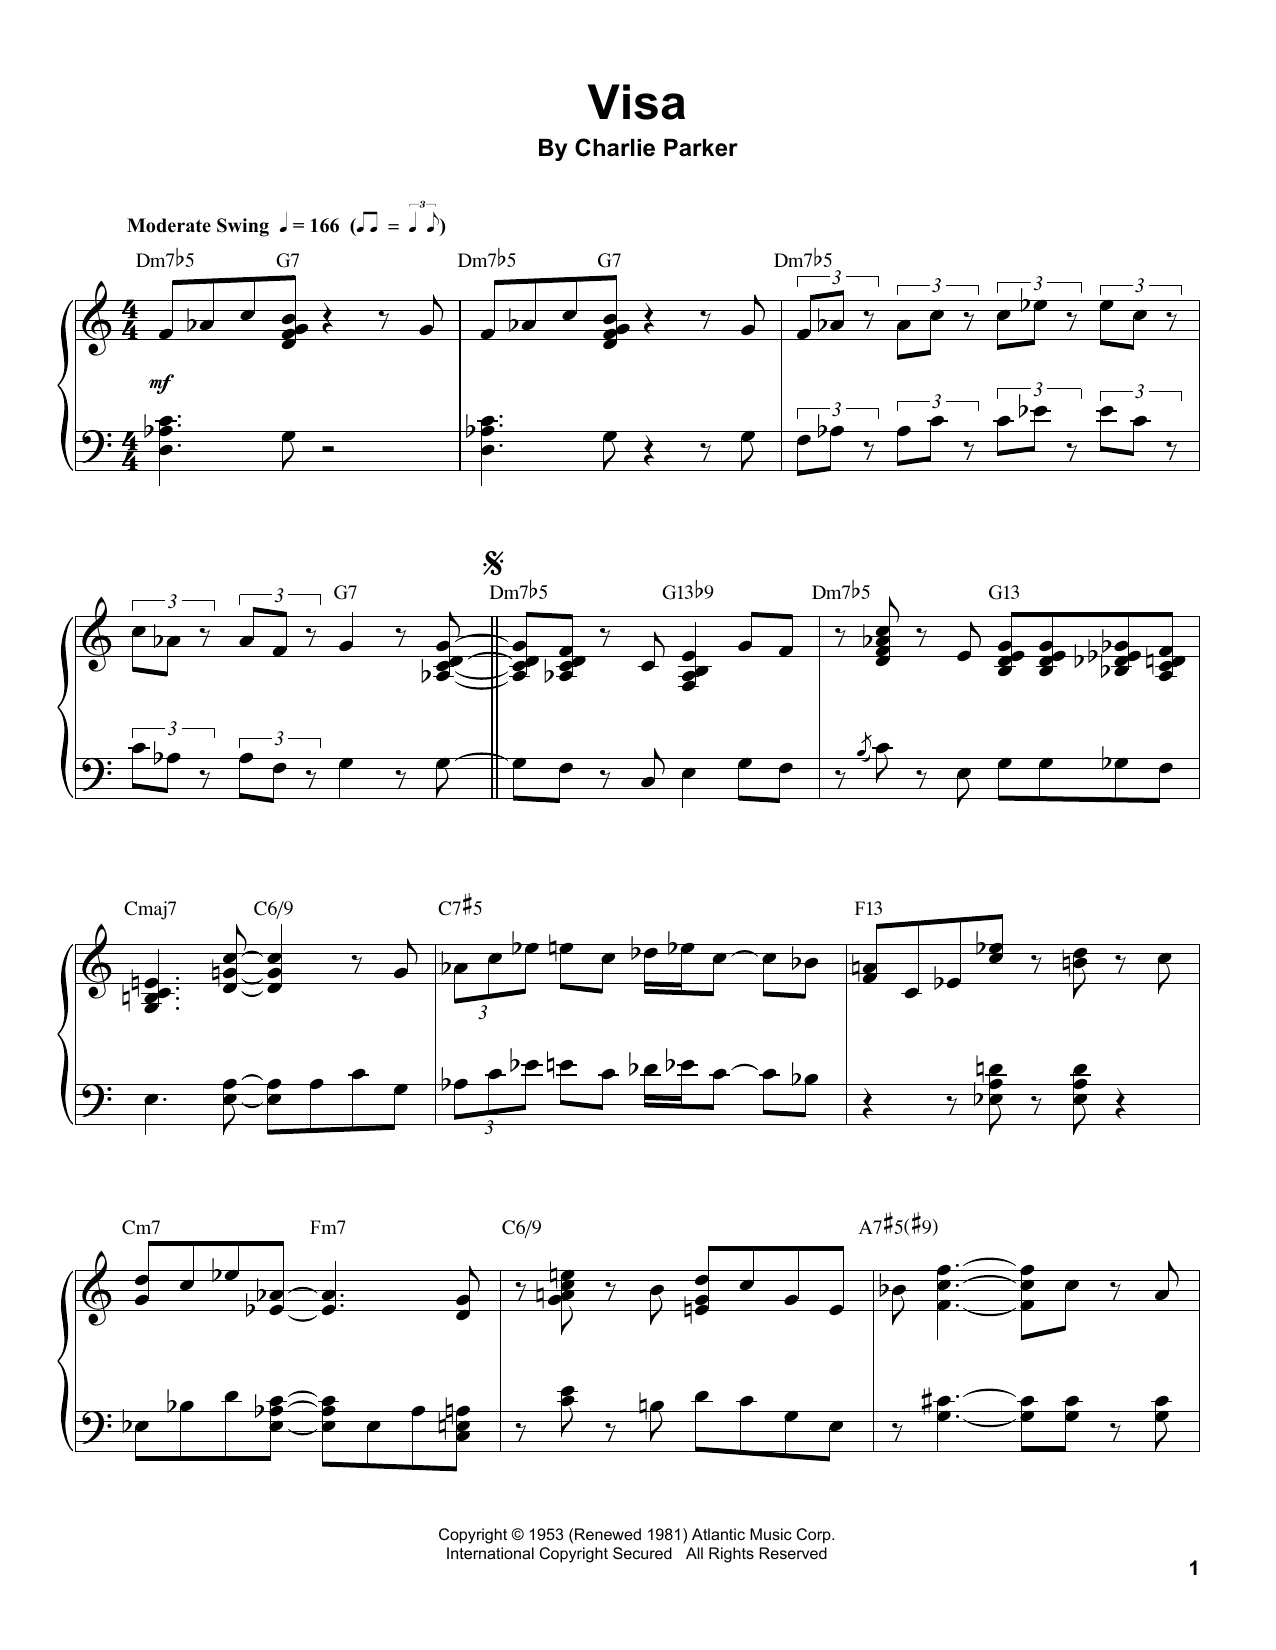 Charlie Parker Visa Sheet Music Notes & Chords for Transcribed Score - Download or Print PDF